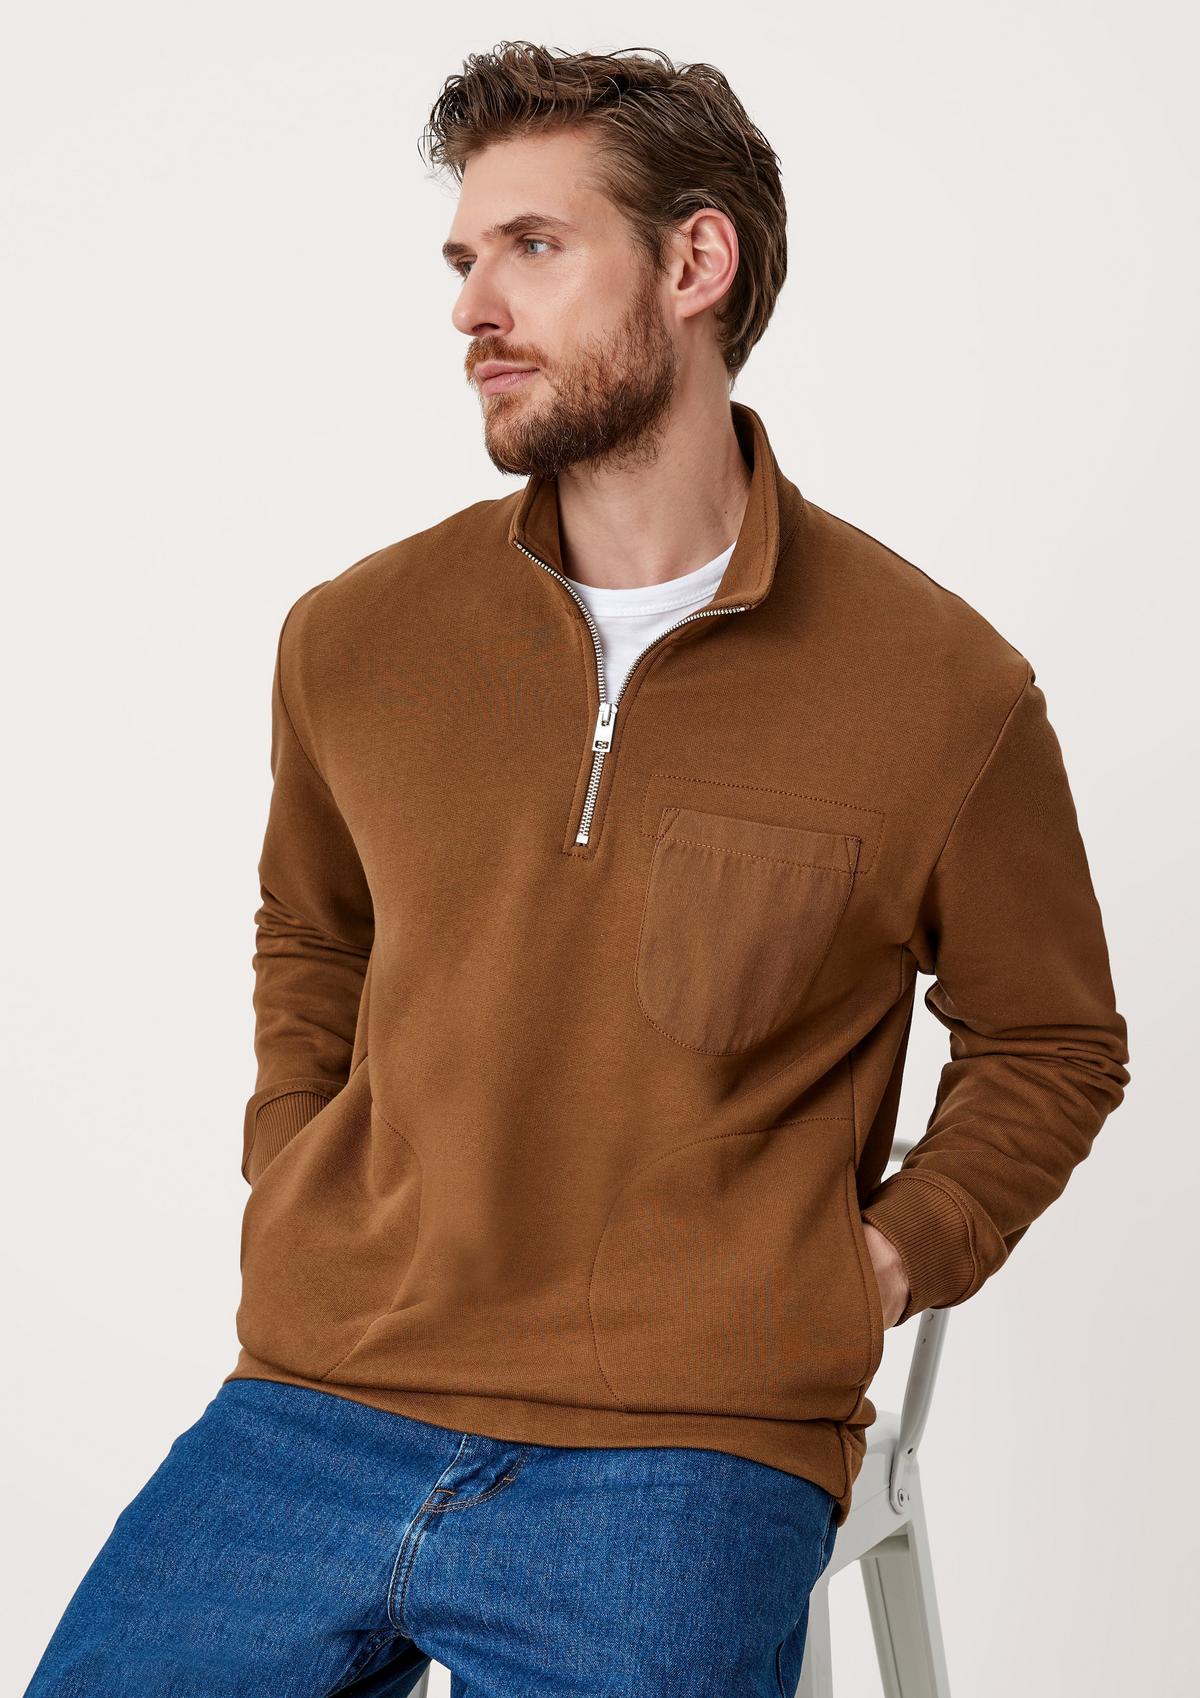 s.Oliver Sweatshirt with a zip neck